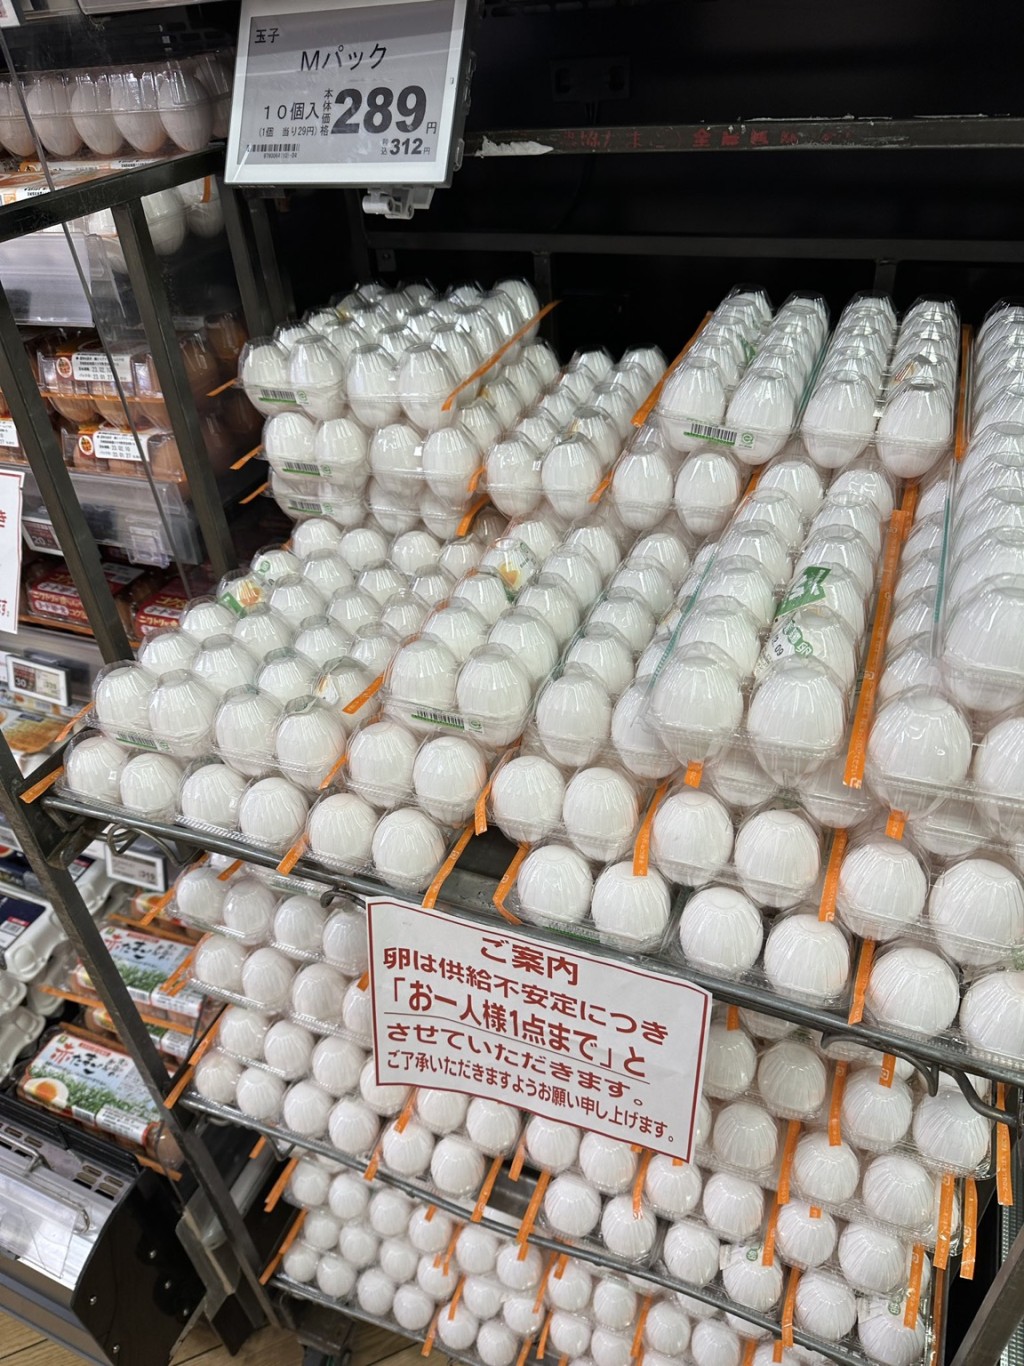 有商店限每人购买一排鸡蛋。 网上图片